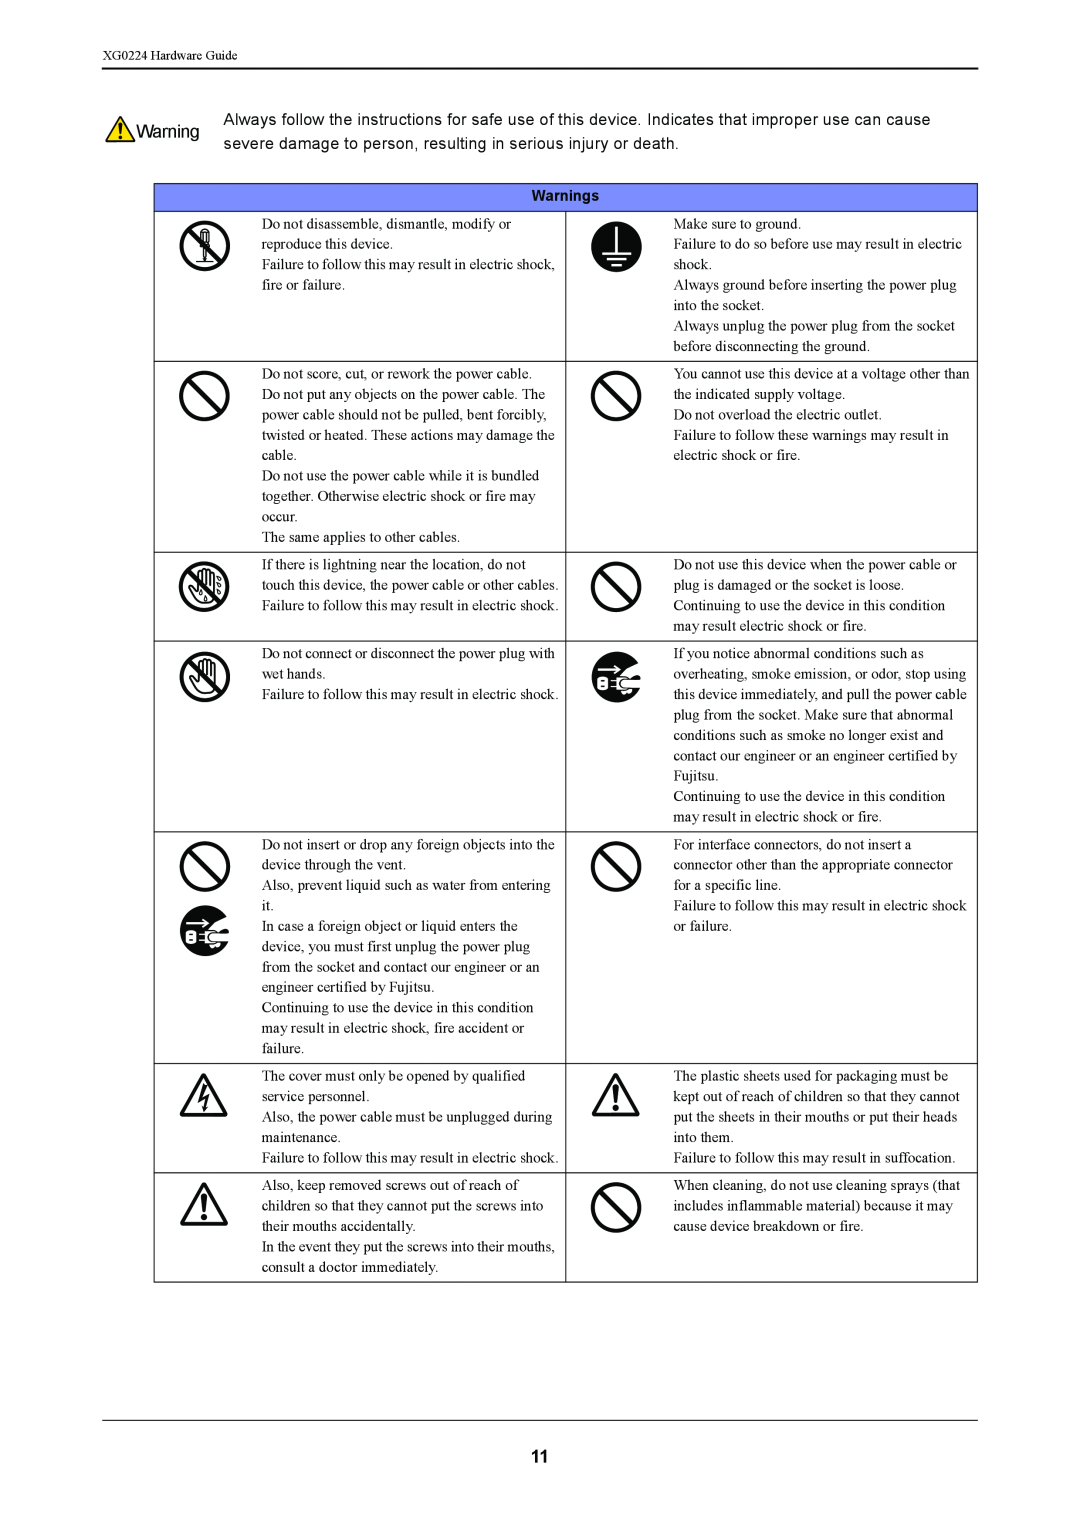 Fujitsu XG0224 manual Warnings 